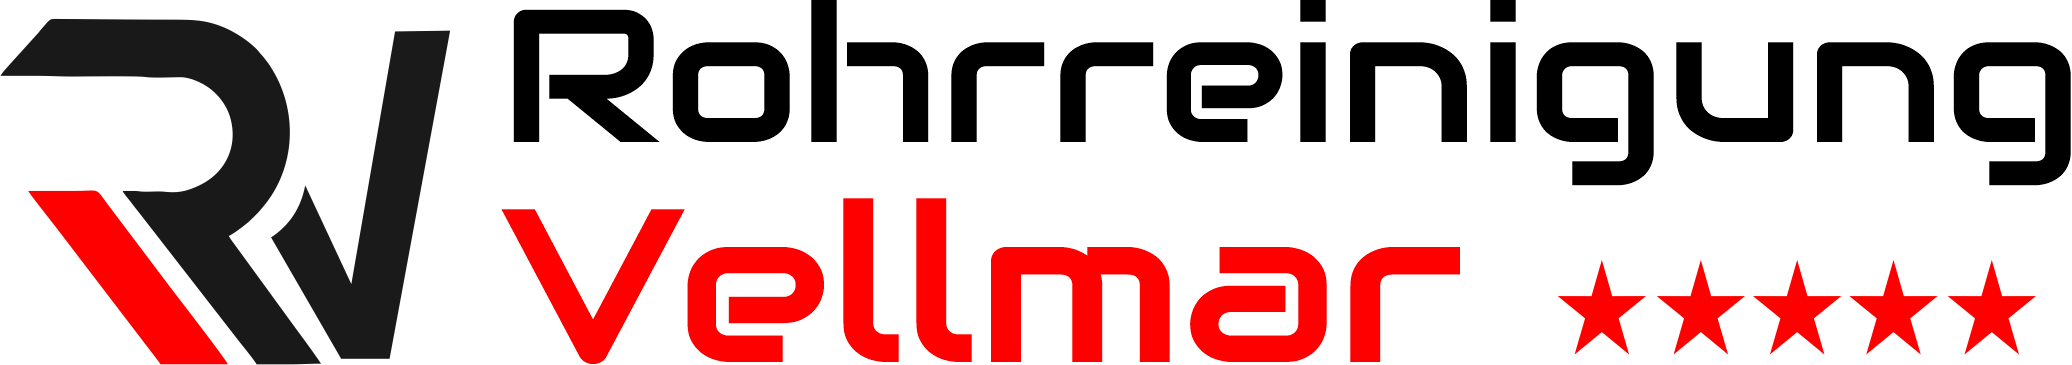 Rohrreinigung Vellmar Logo